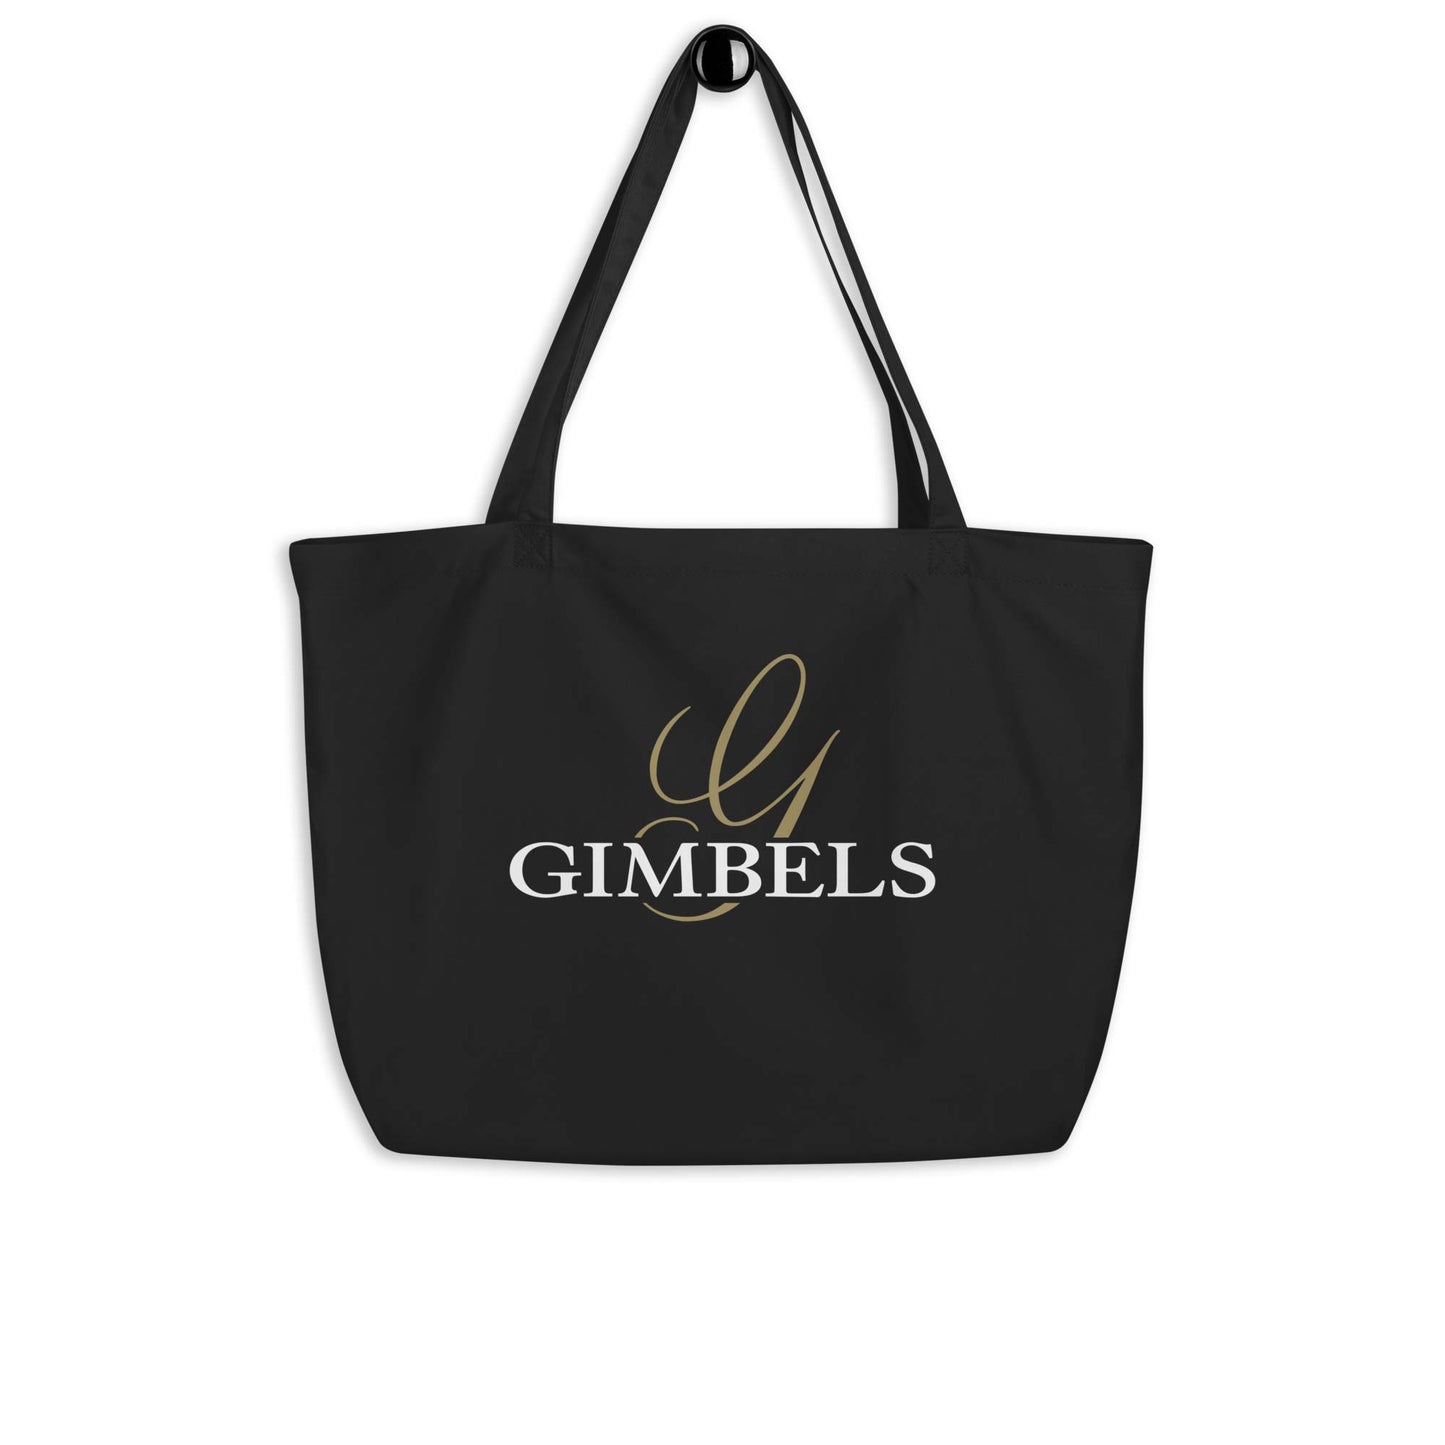 Gimbels Department Store Large organic tote bag